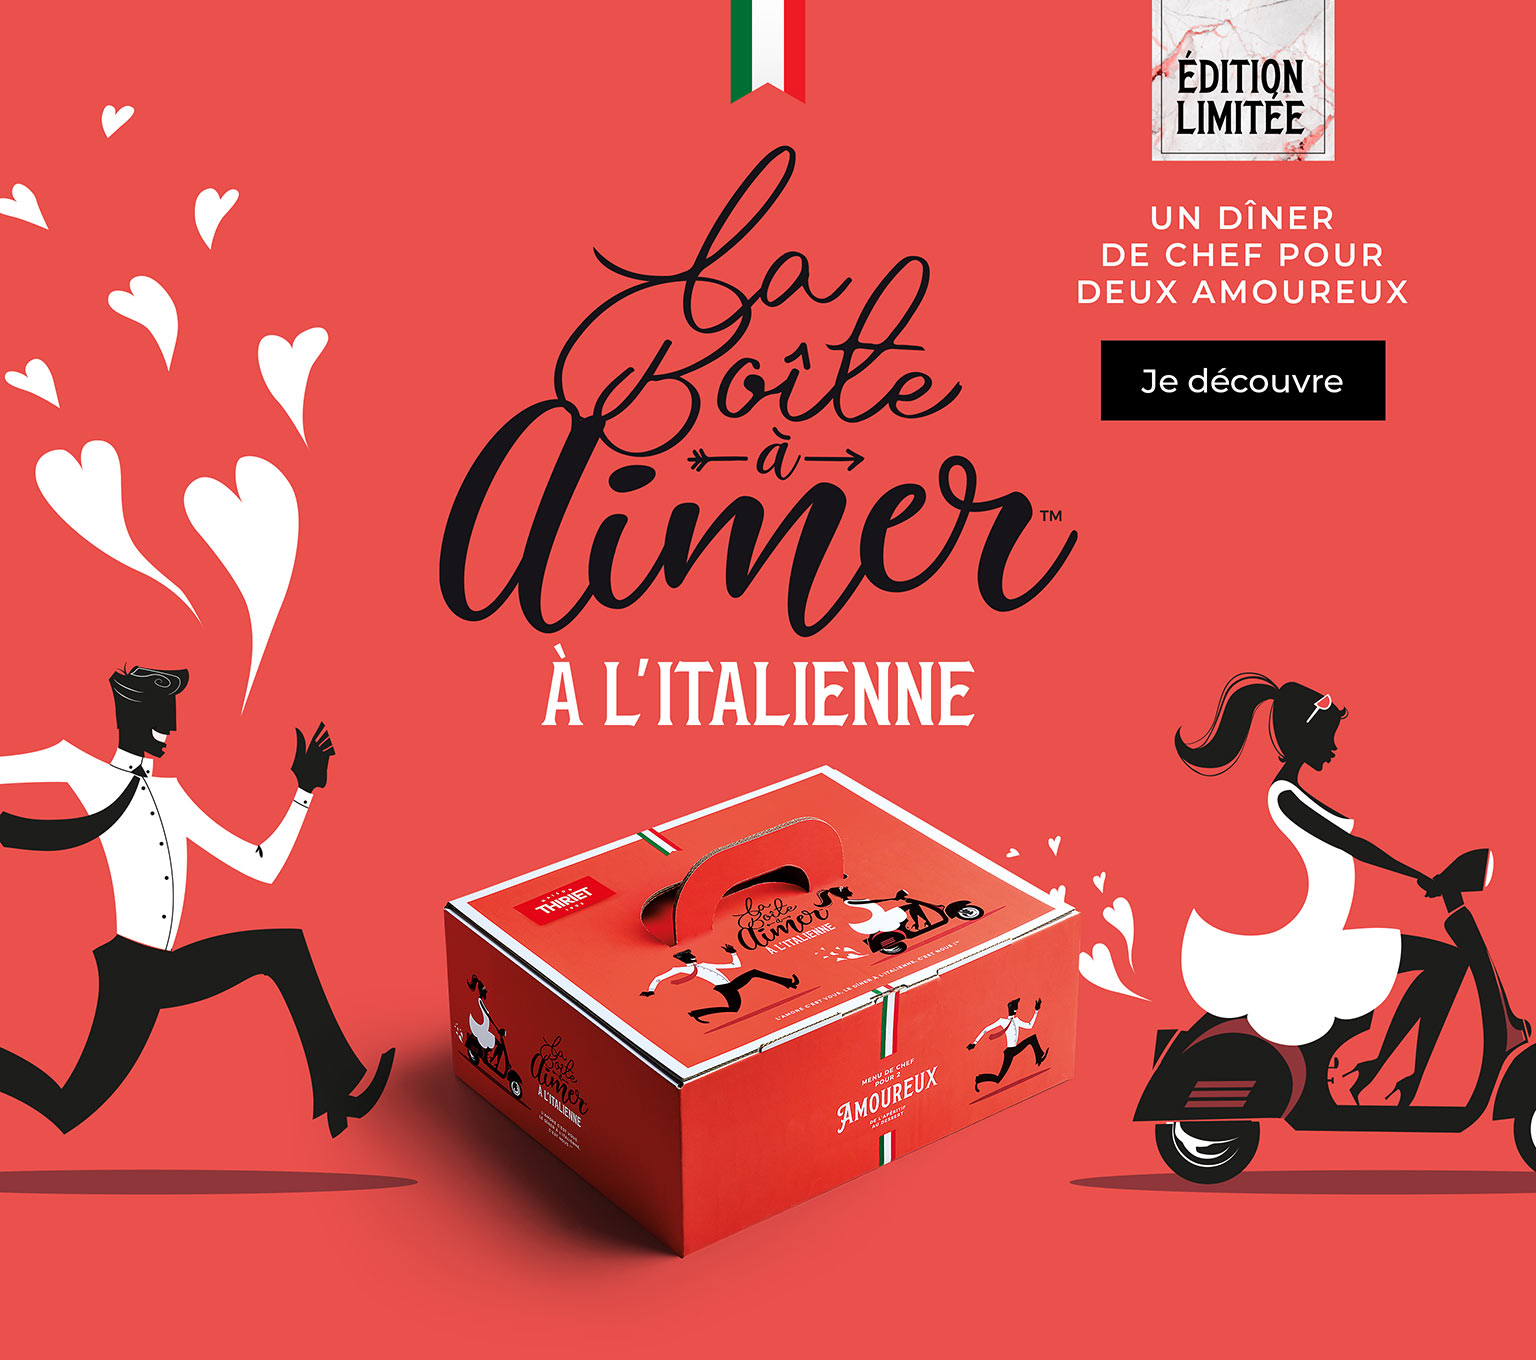 Découvrez la Boîte à Aimer™ à l'italienne avec un dîner de chef pour deux spécial Saint-Valentin